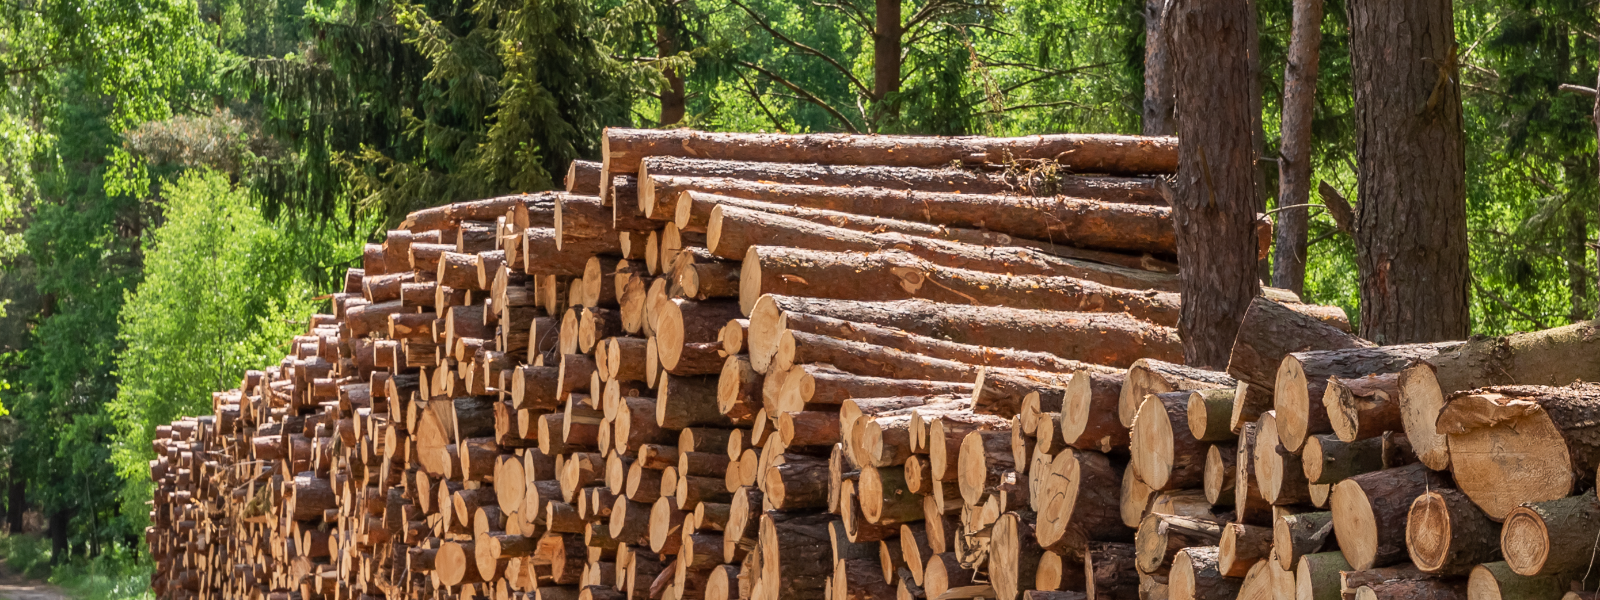 ALAR METS OÜ - Pakume professionaalseid ja usaldusväärseid metsamajanduse teenuseid, sealhulgas metsamaa ostu ja metsak...